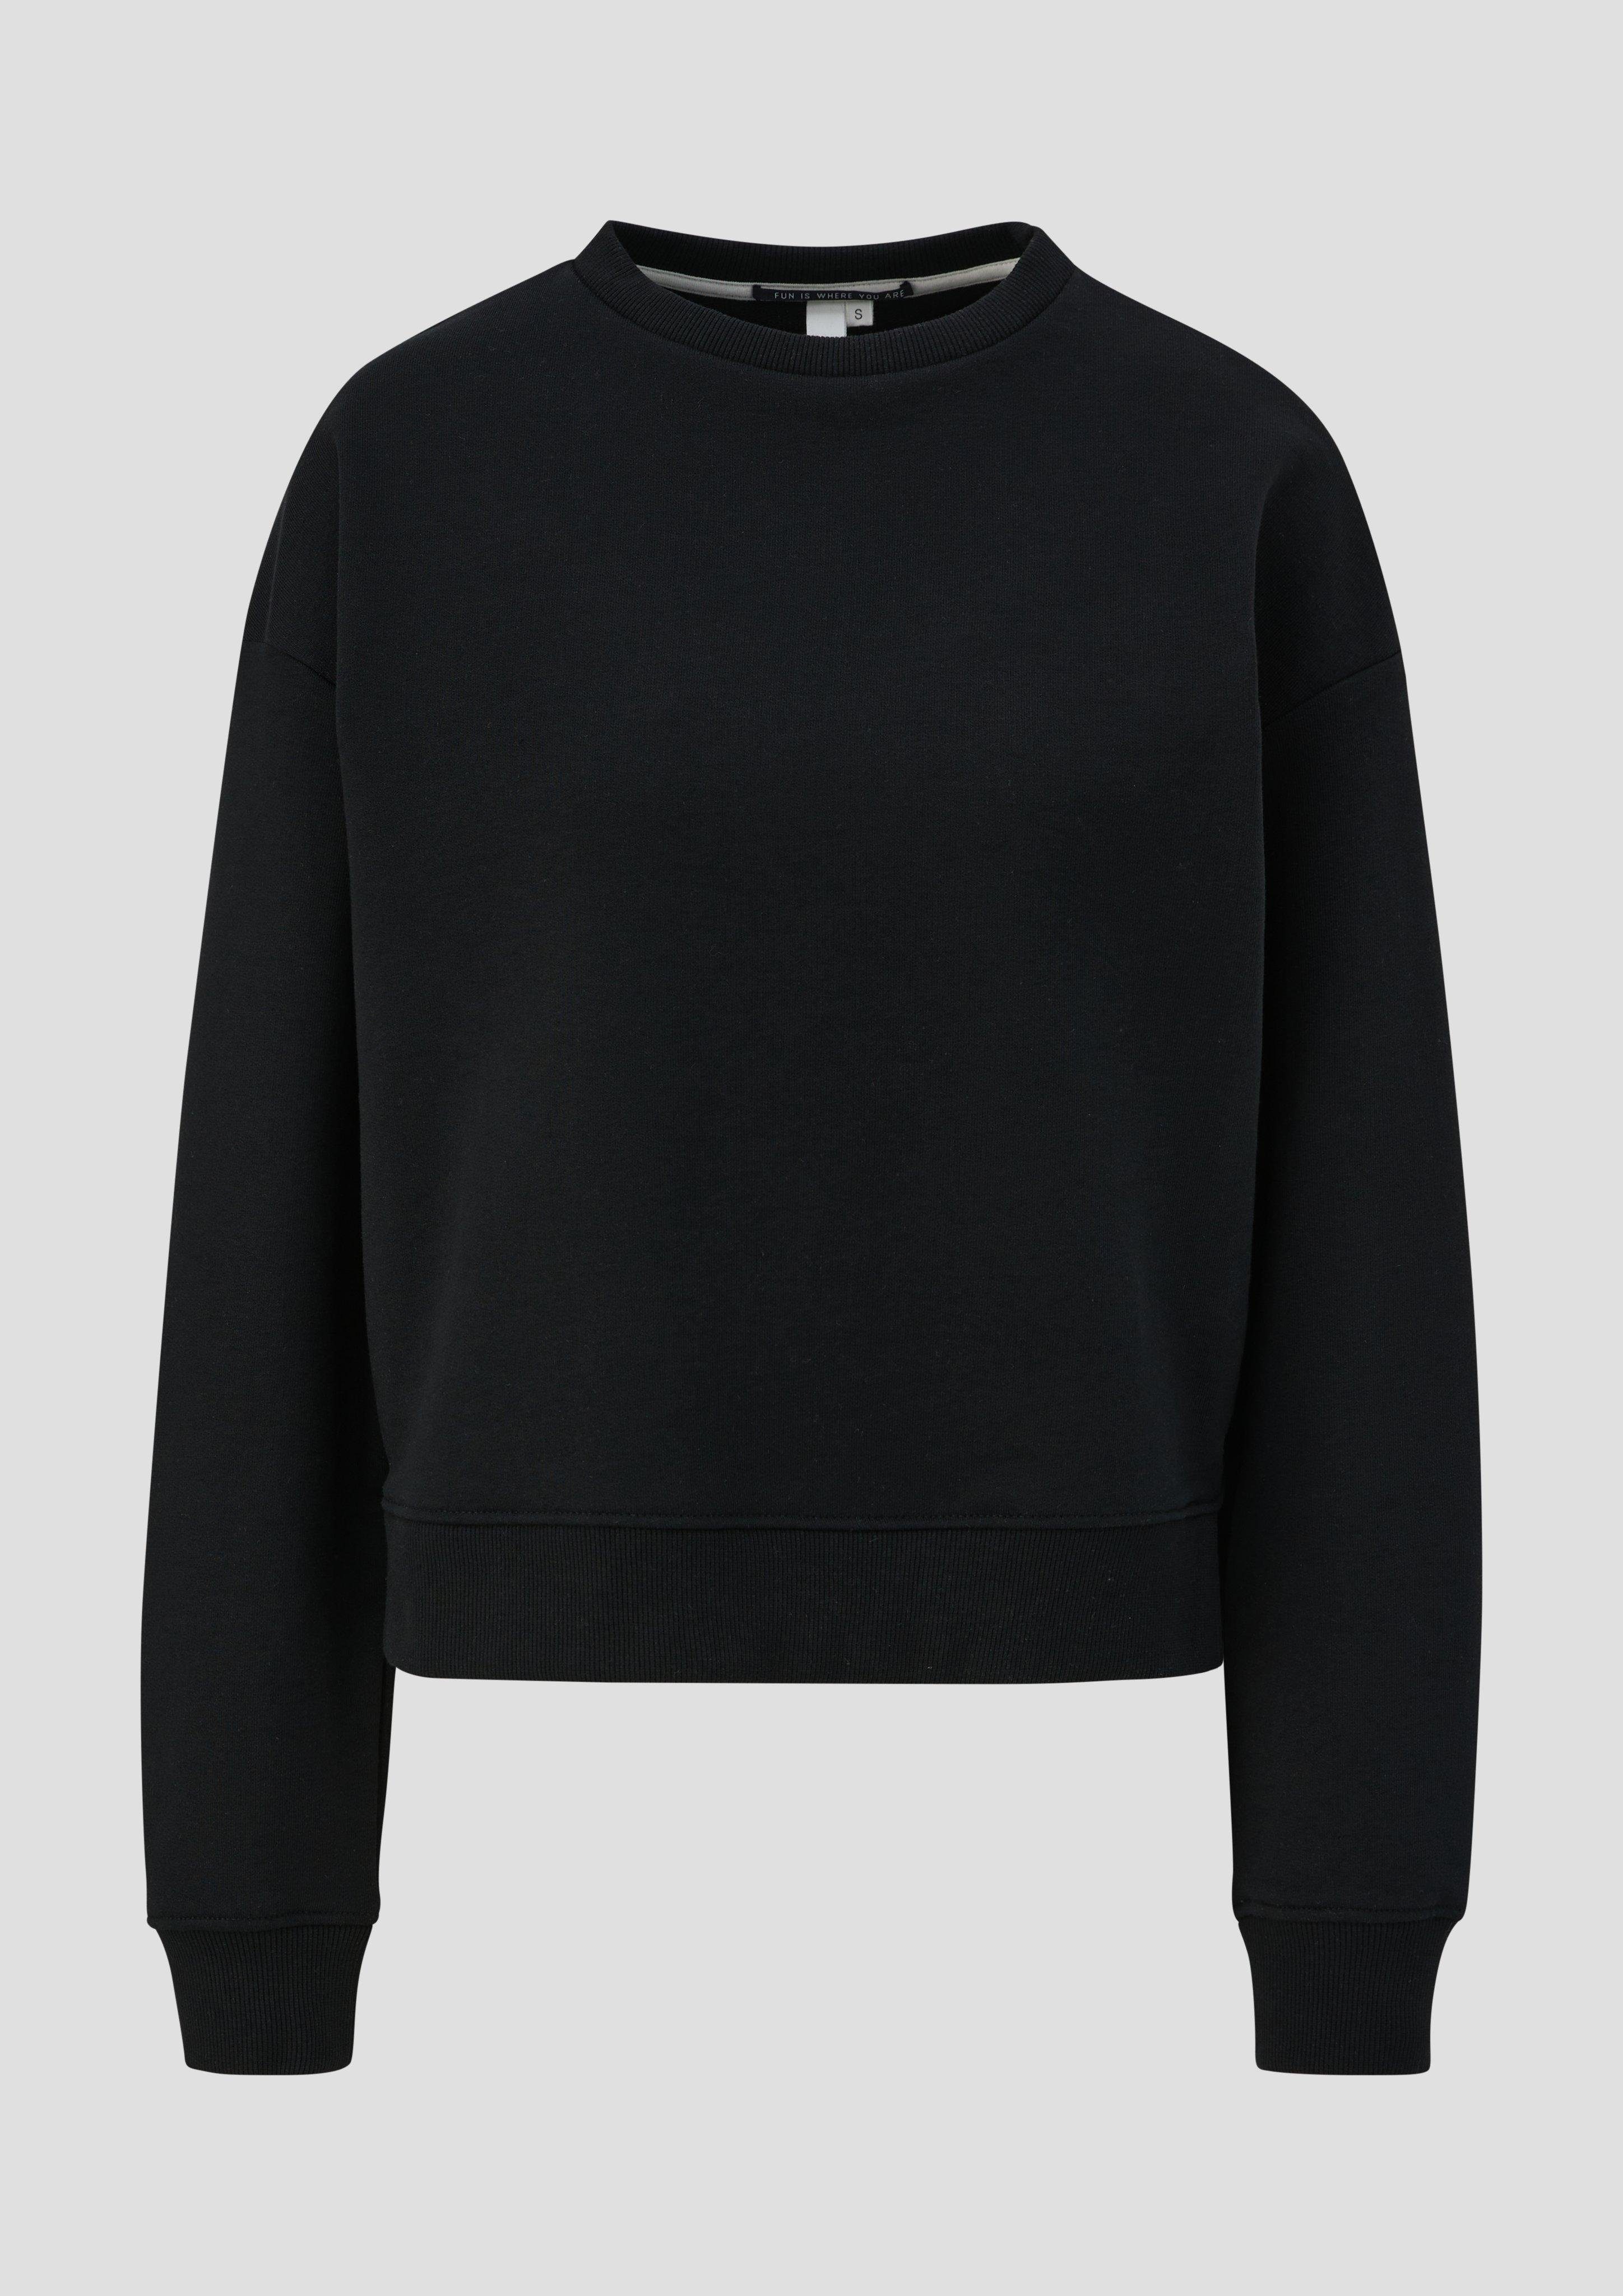 QS Sweatshirt Sweatshirt Logo Saum schwarz offenem seitlich mit